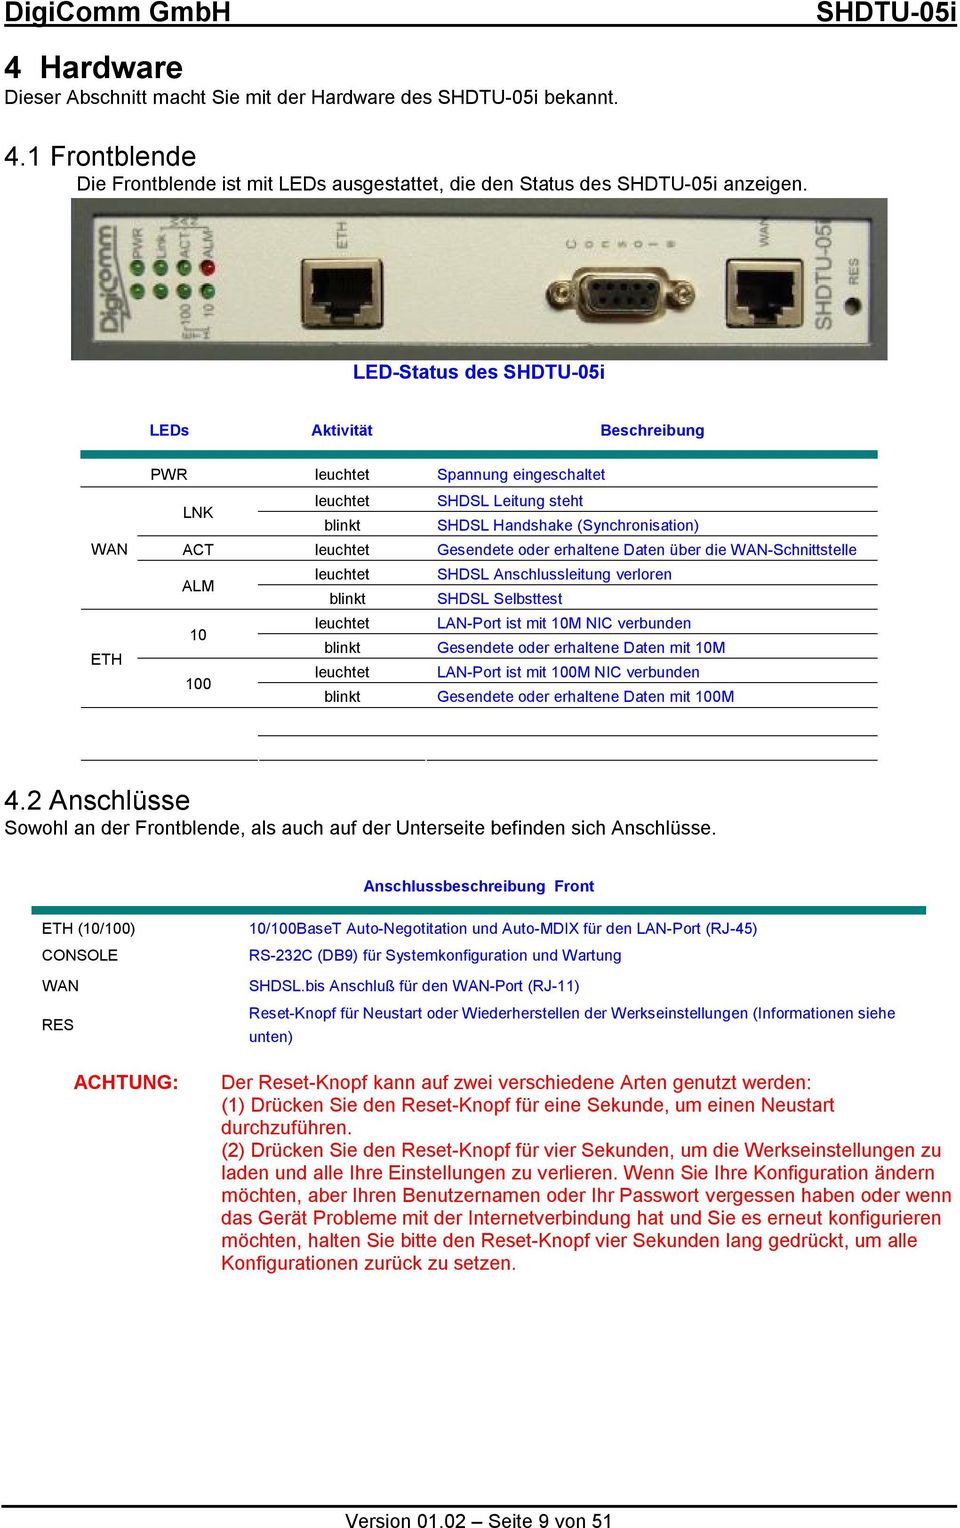 Daten über die WAN-Schnittstelle ALM leuchtet SHDSL Anschlussleitung verloren blinkt SHDSL Selbsttest 10 leuchtet LAN-Port ist mit 10M NIC verbunden blinkt Gesendete oder erhaltene Daten mit 10M 100